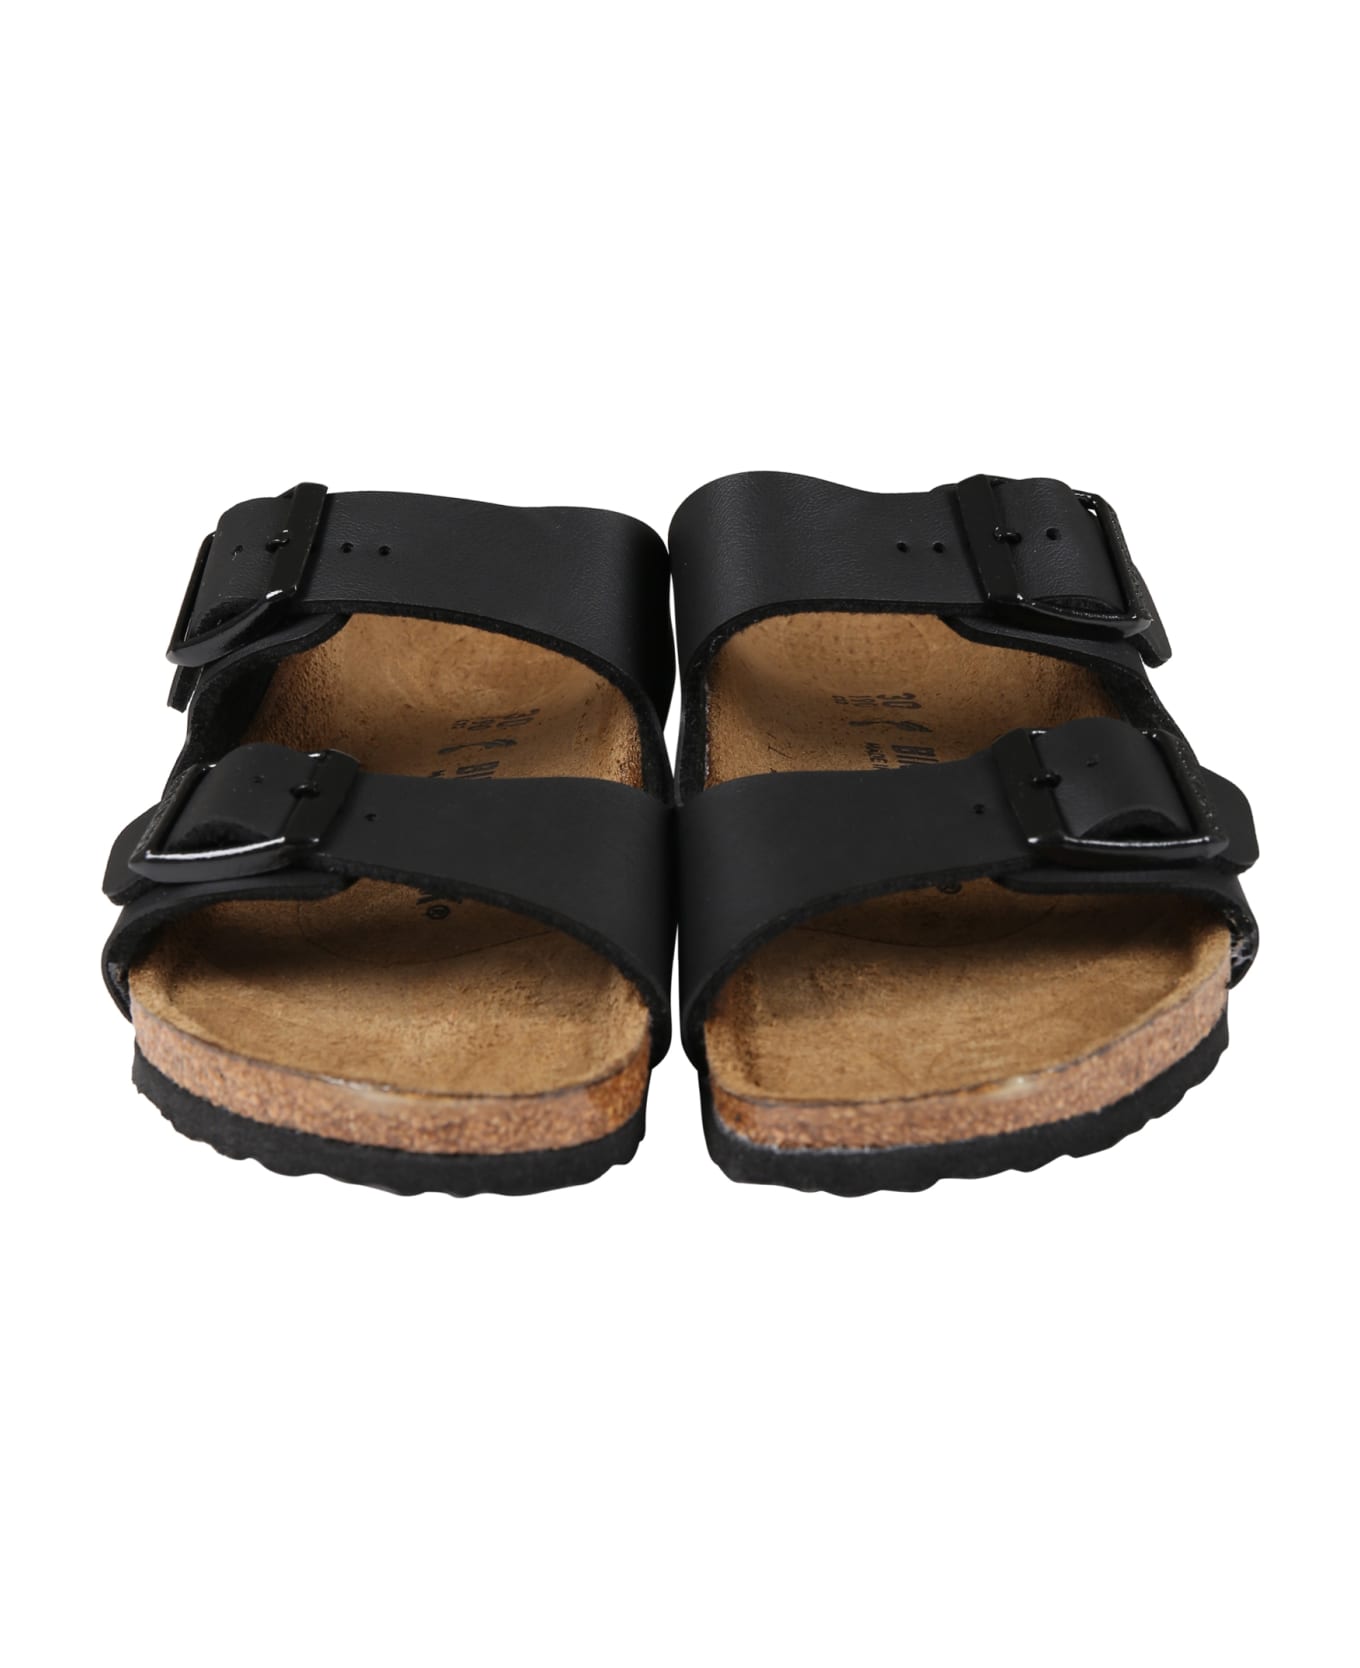 Birkenstock Black Sandals "arizona Eva" For Kids With Logo - Black